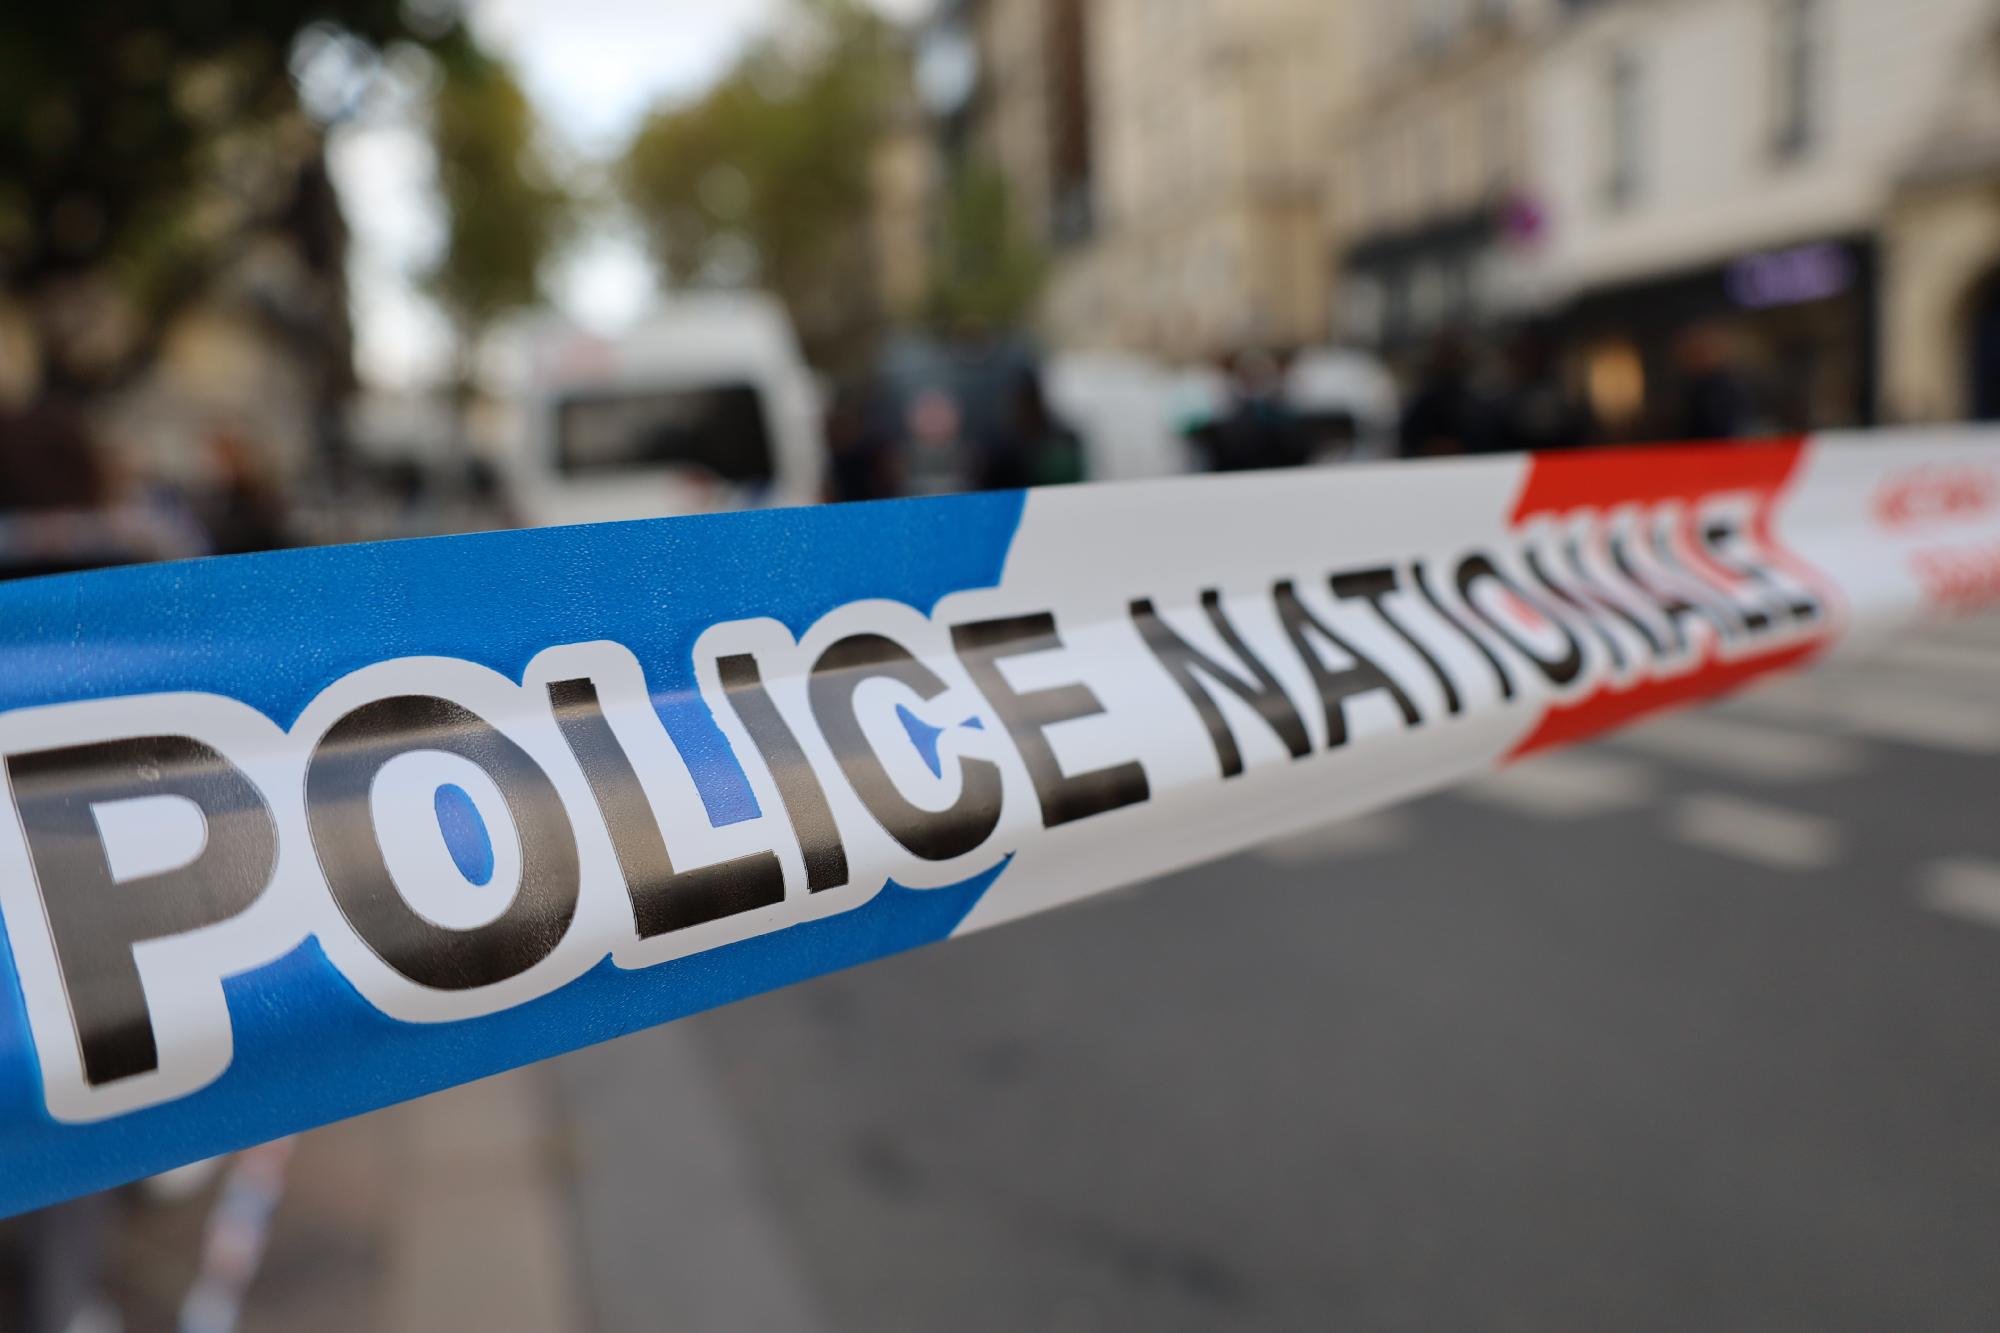 Késes támadás történt egy franciaországi iskolában